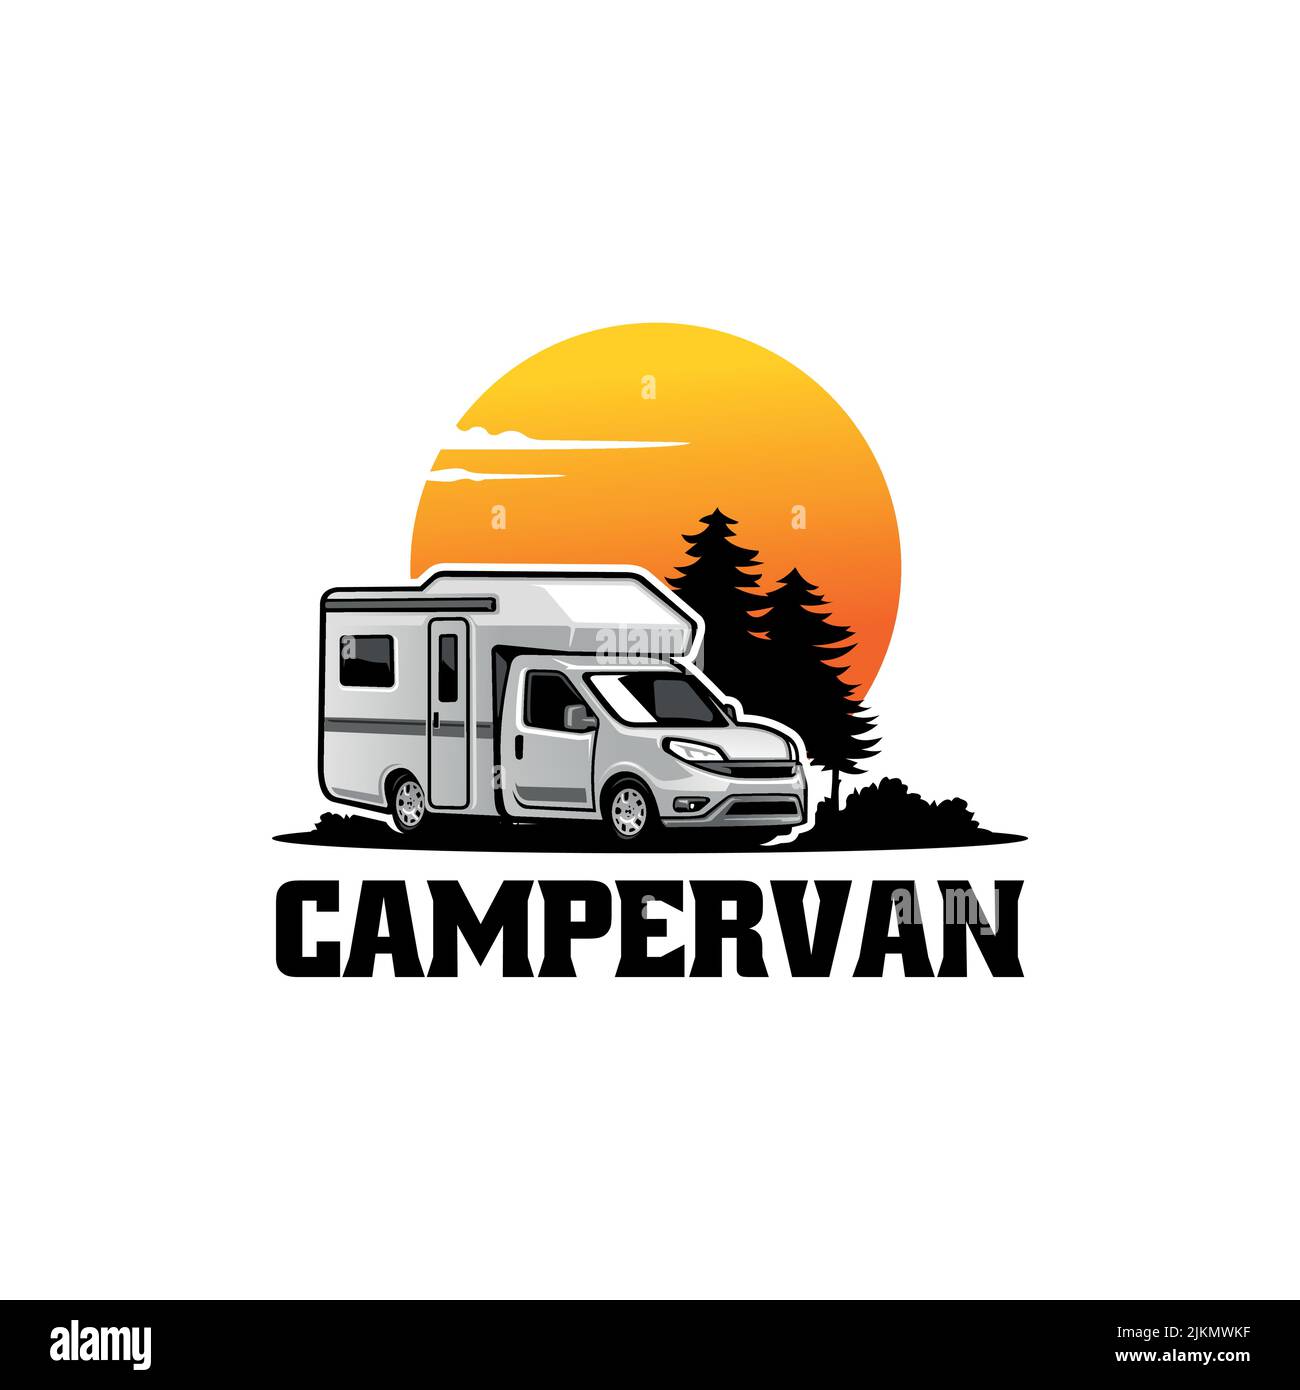 Campervan art Stock Vector Images - Alamy